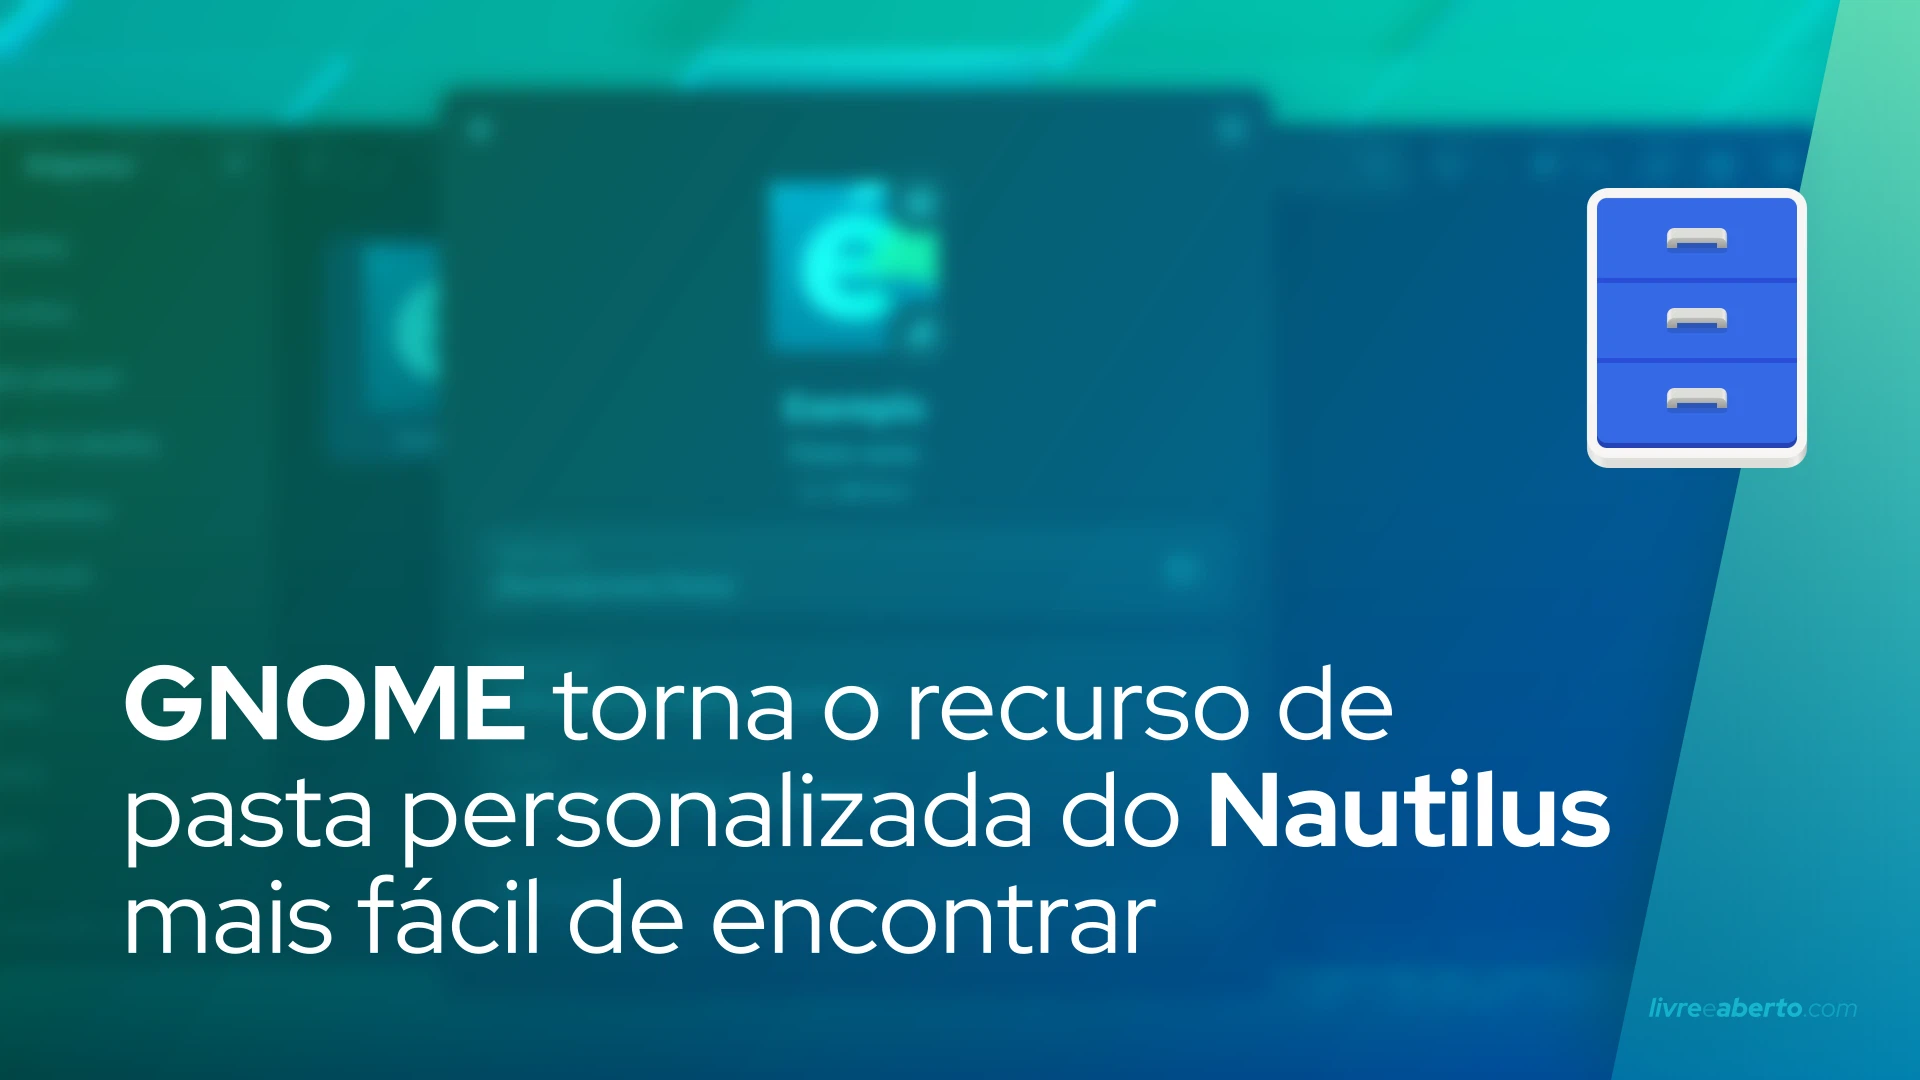 GNOME torna o recurso de pasta personalizada do Nautilus mais fácil de encontrar